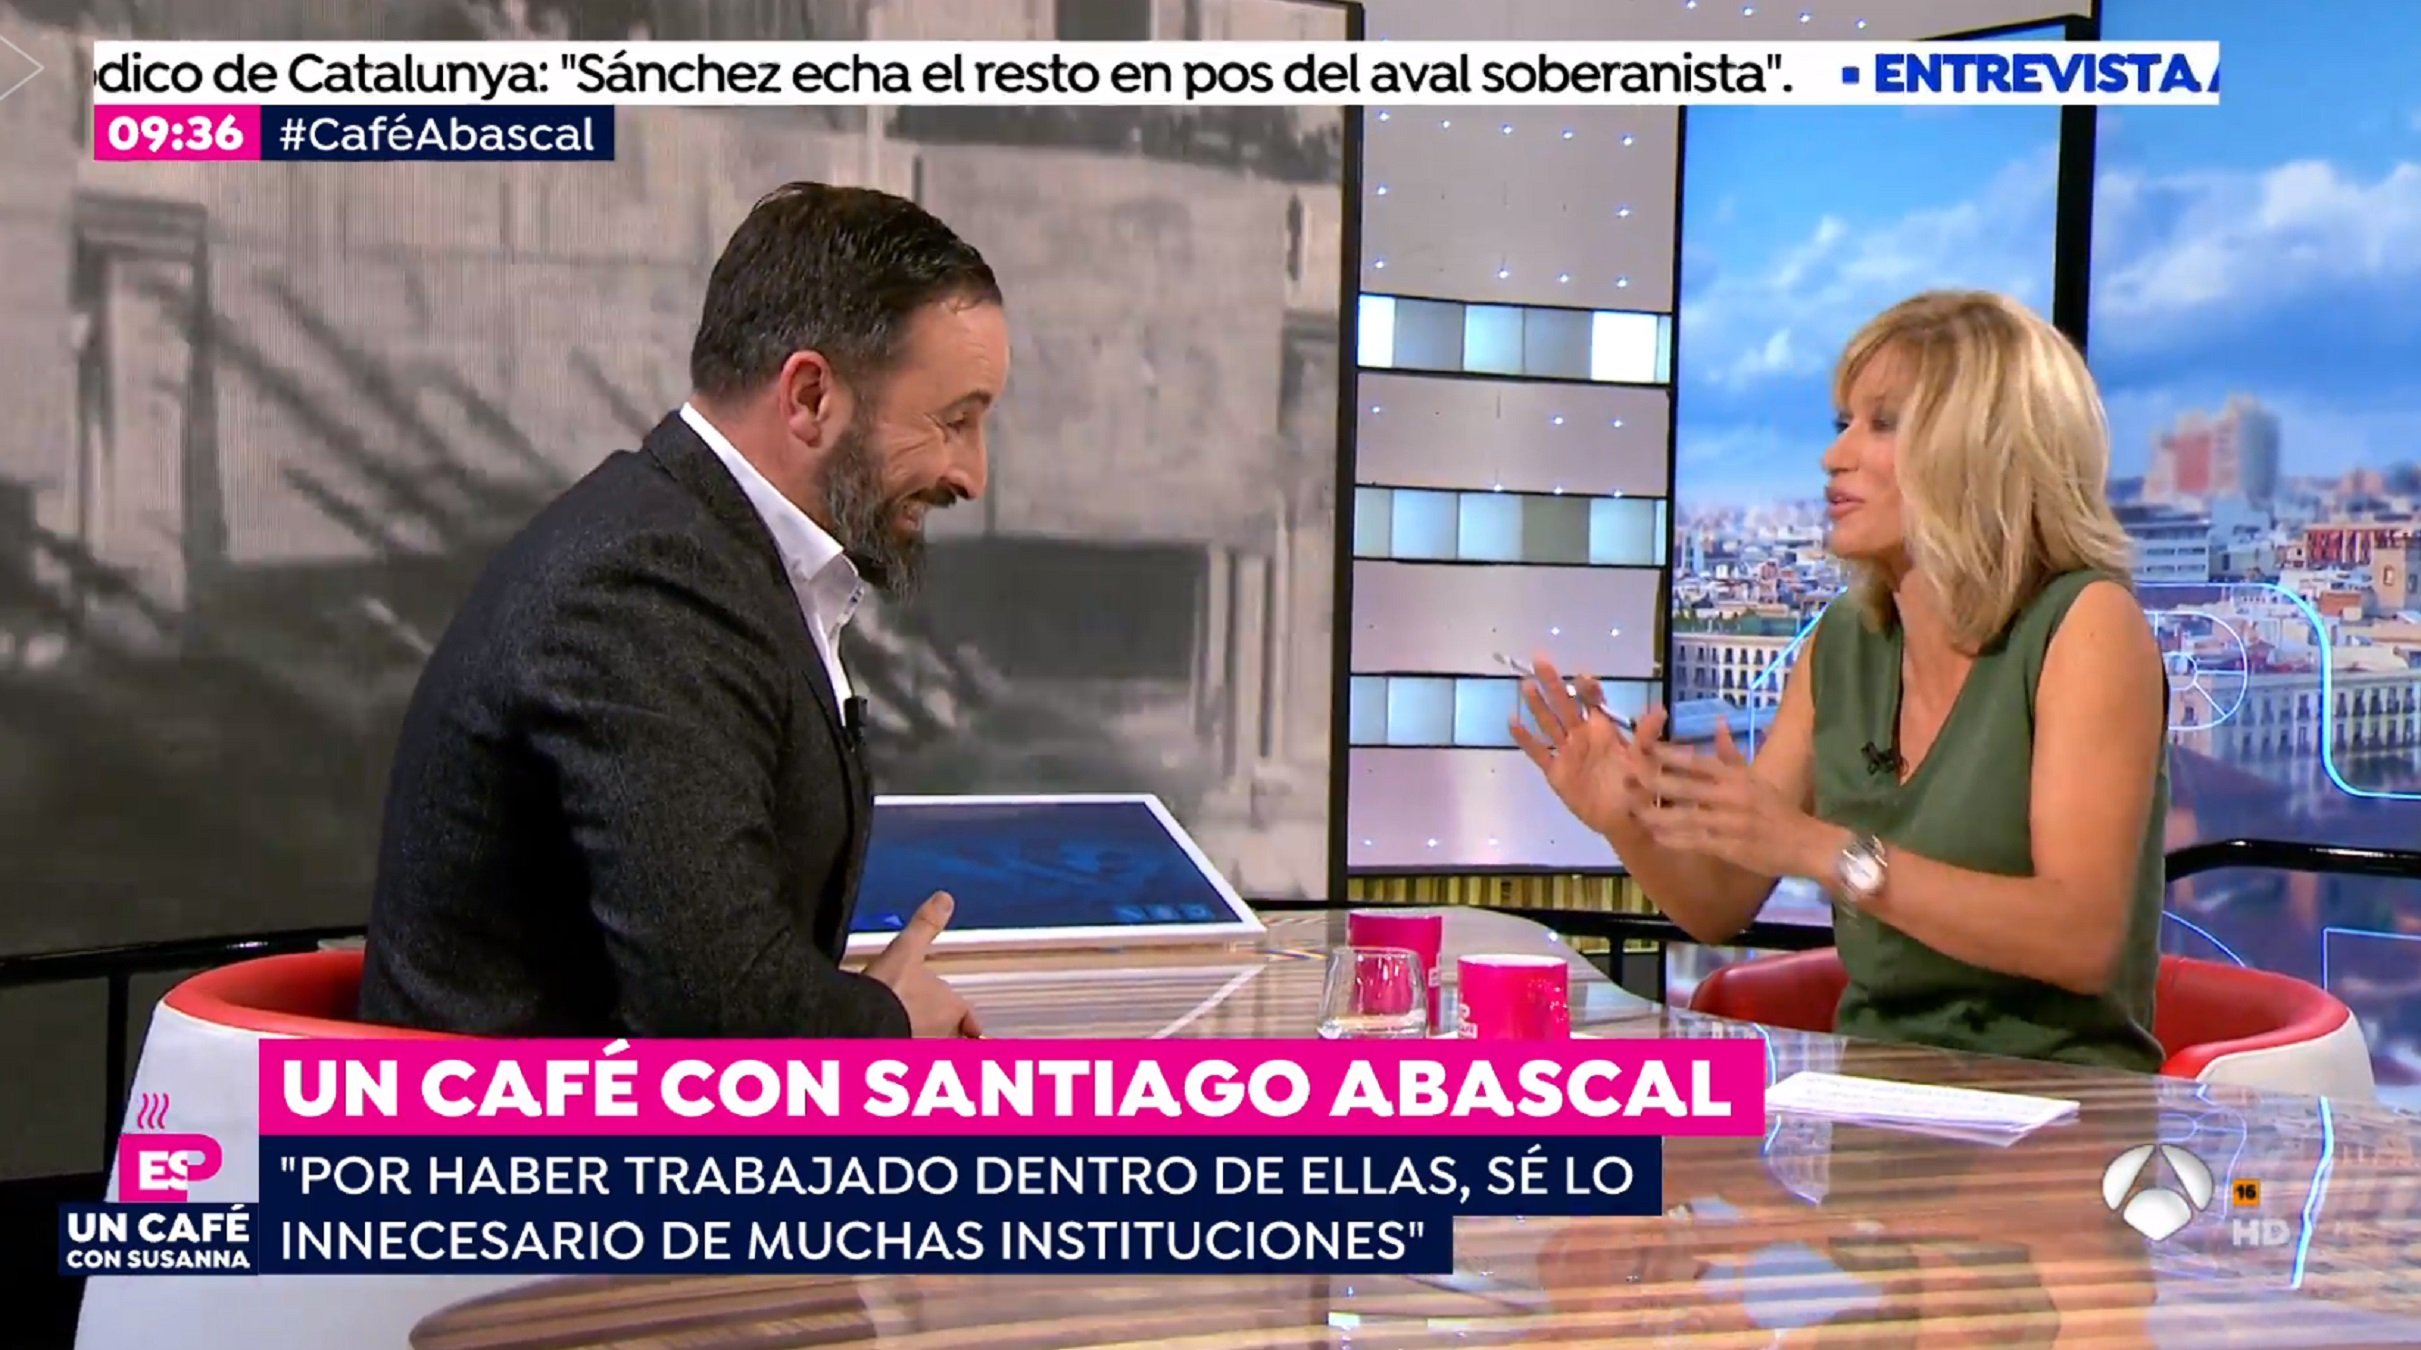 Griso entrevista Abascal i la xarxa la trinxa sense pietat pel que ha vist